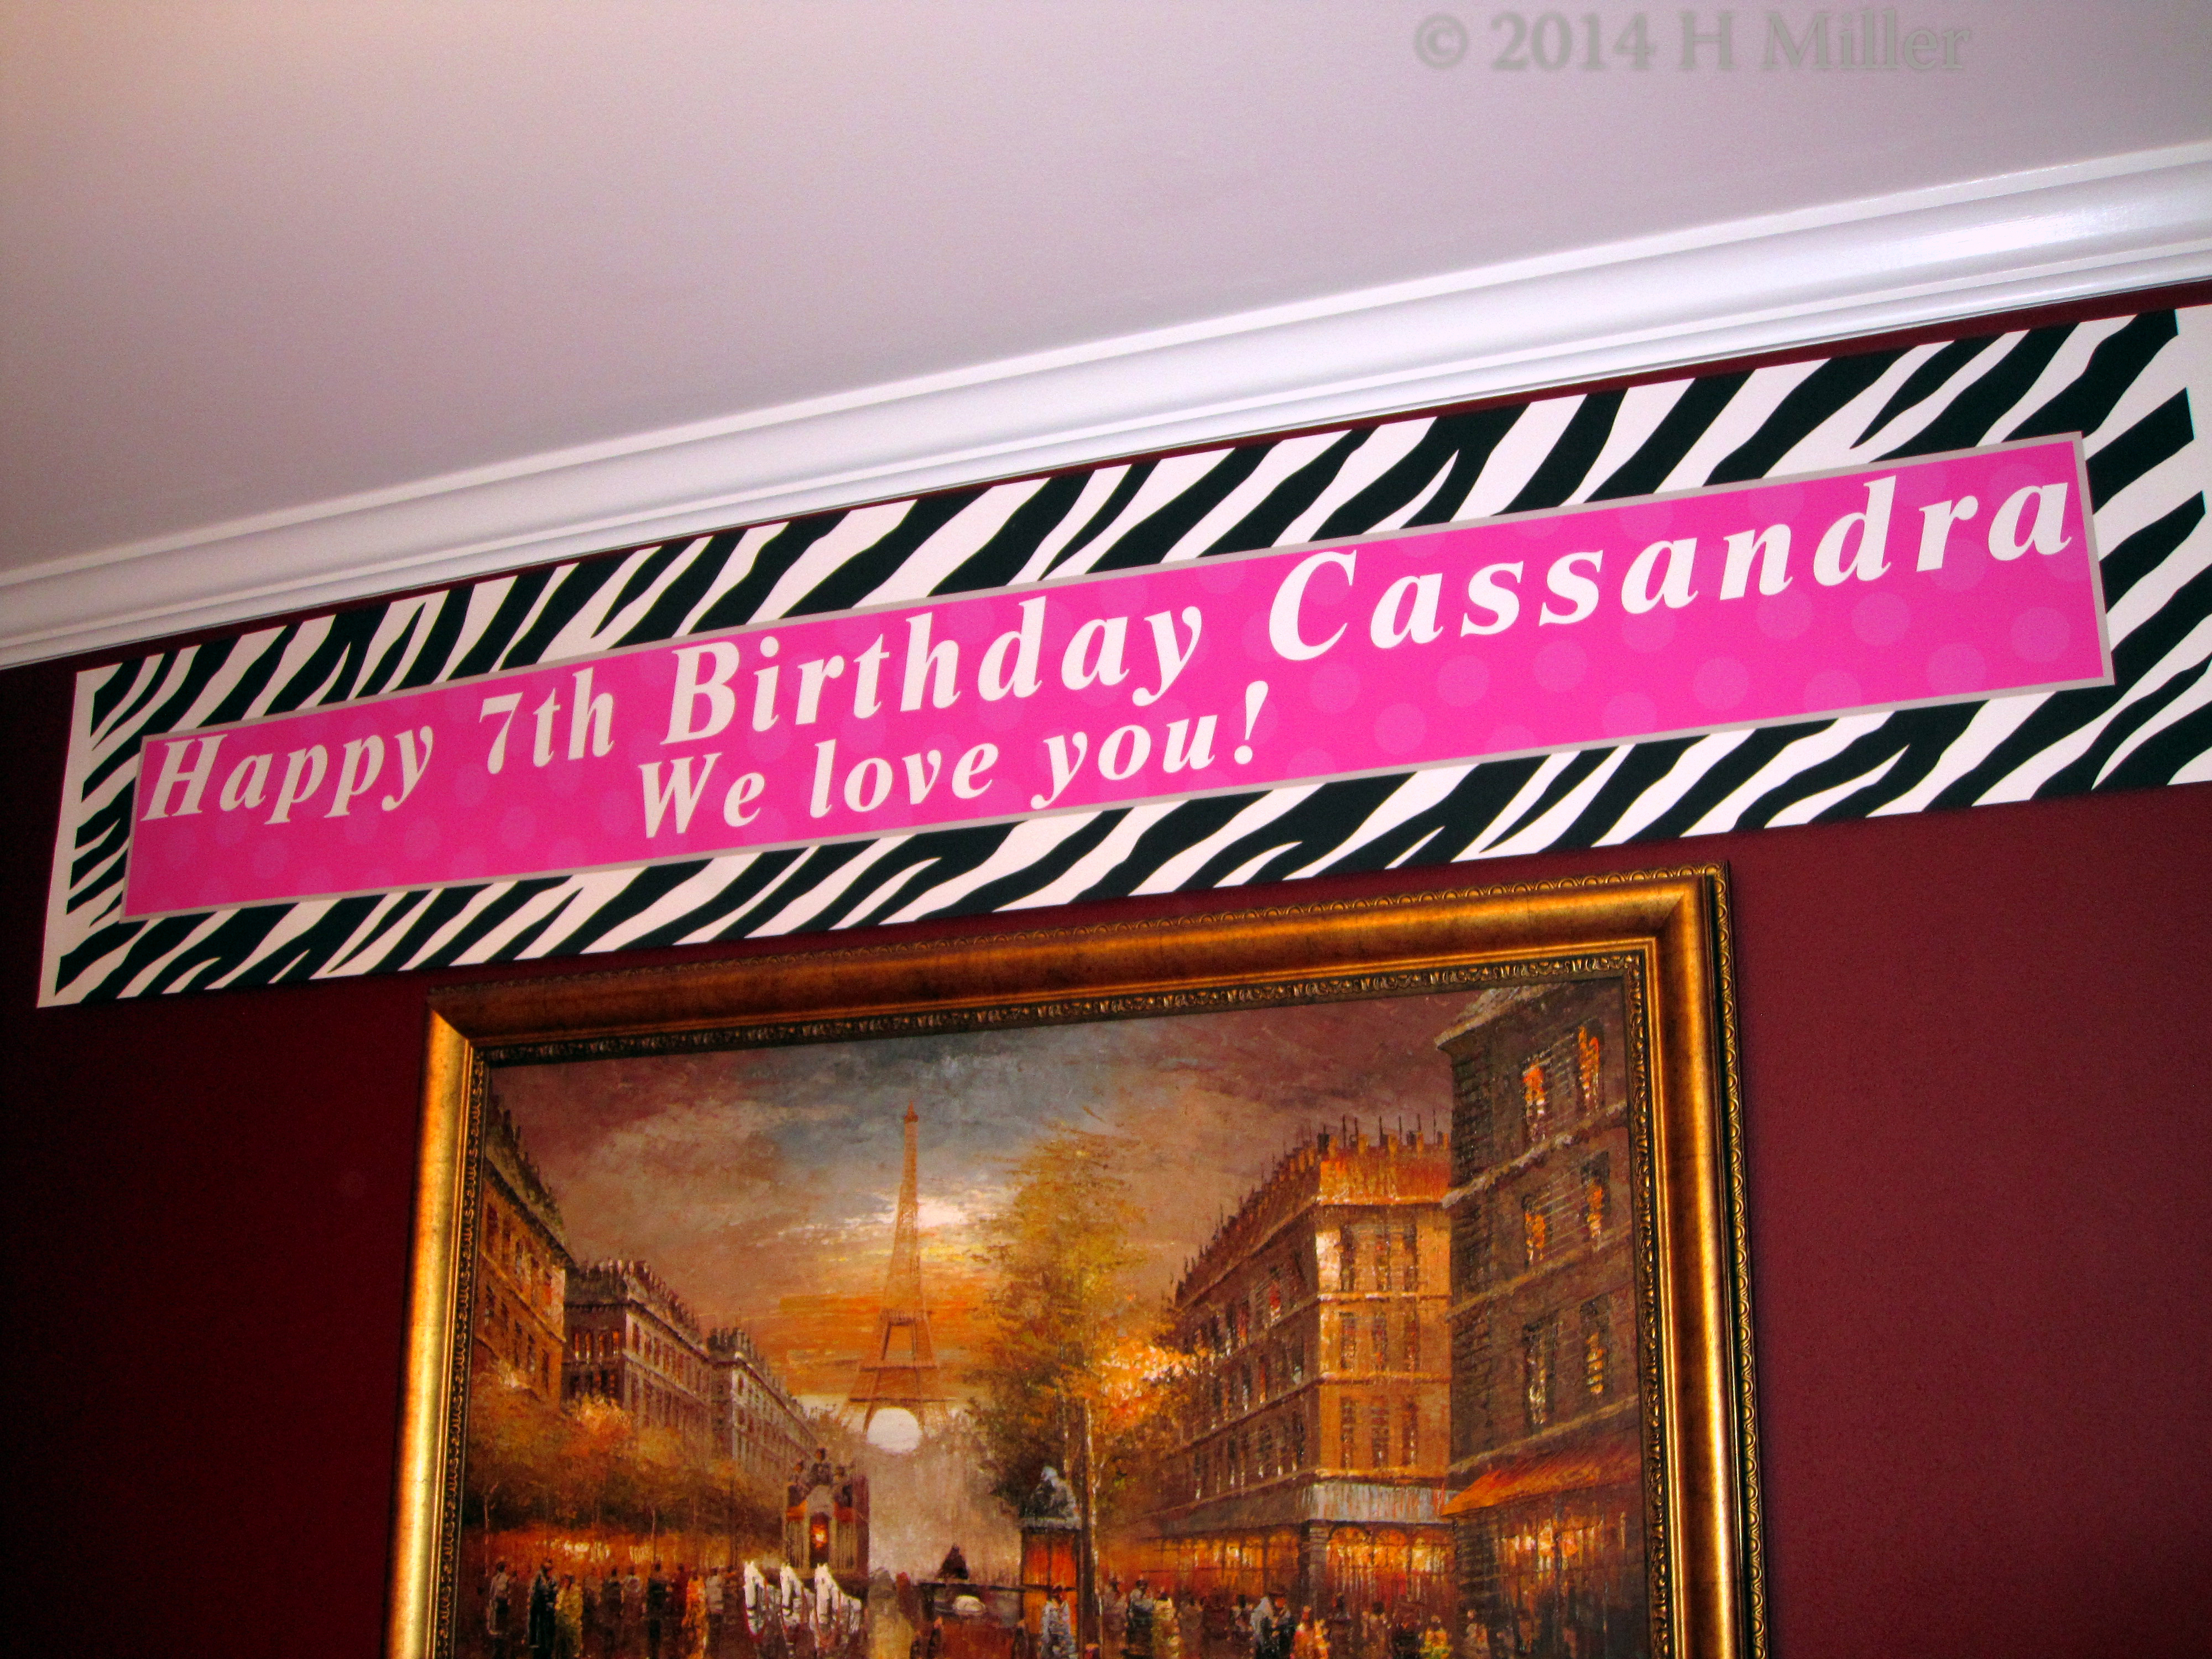 Cassandra's Birthday Banner From Her Family.